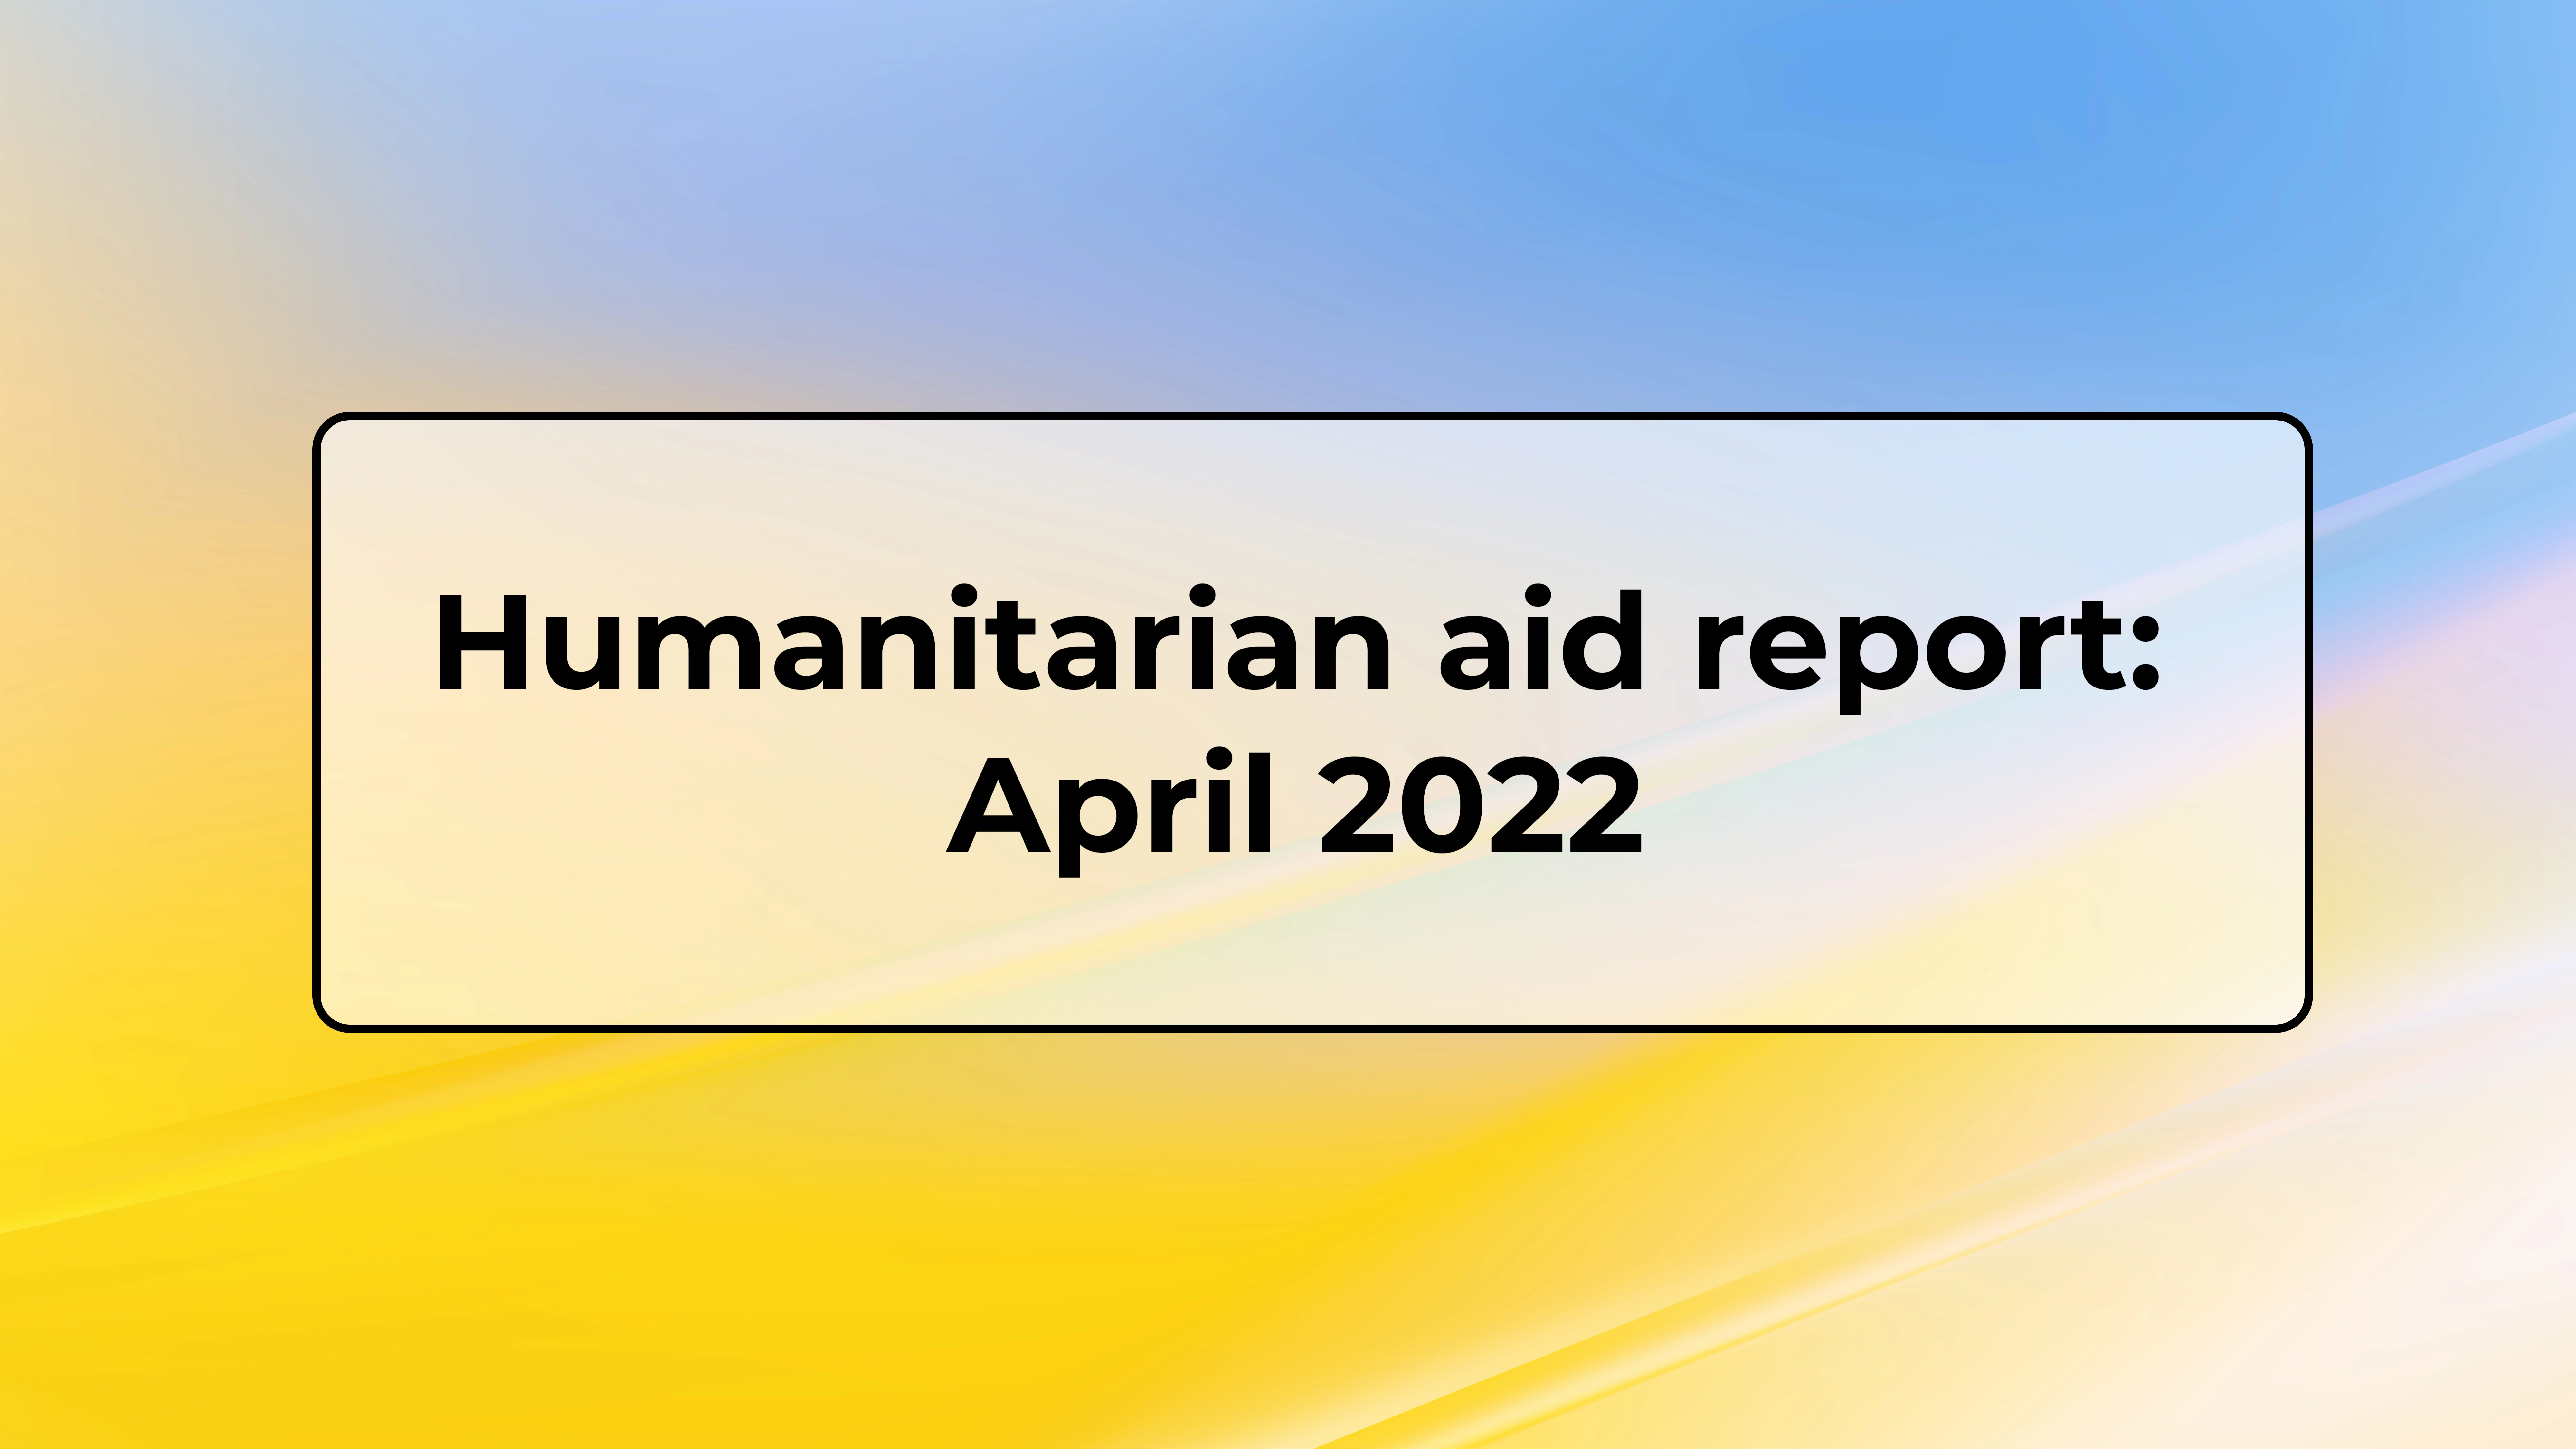 Humanitarian aid report April